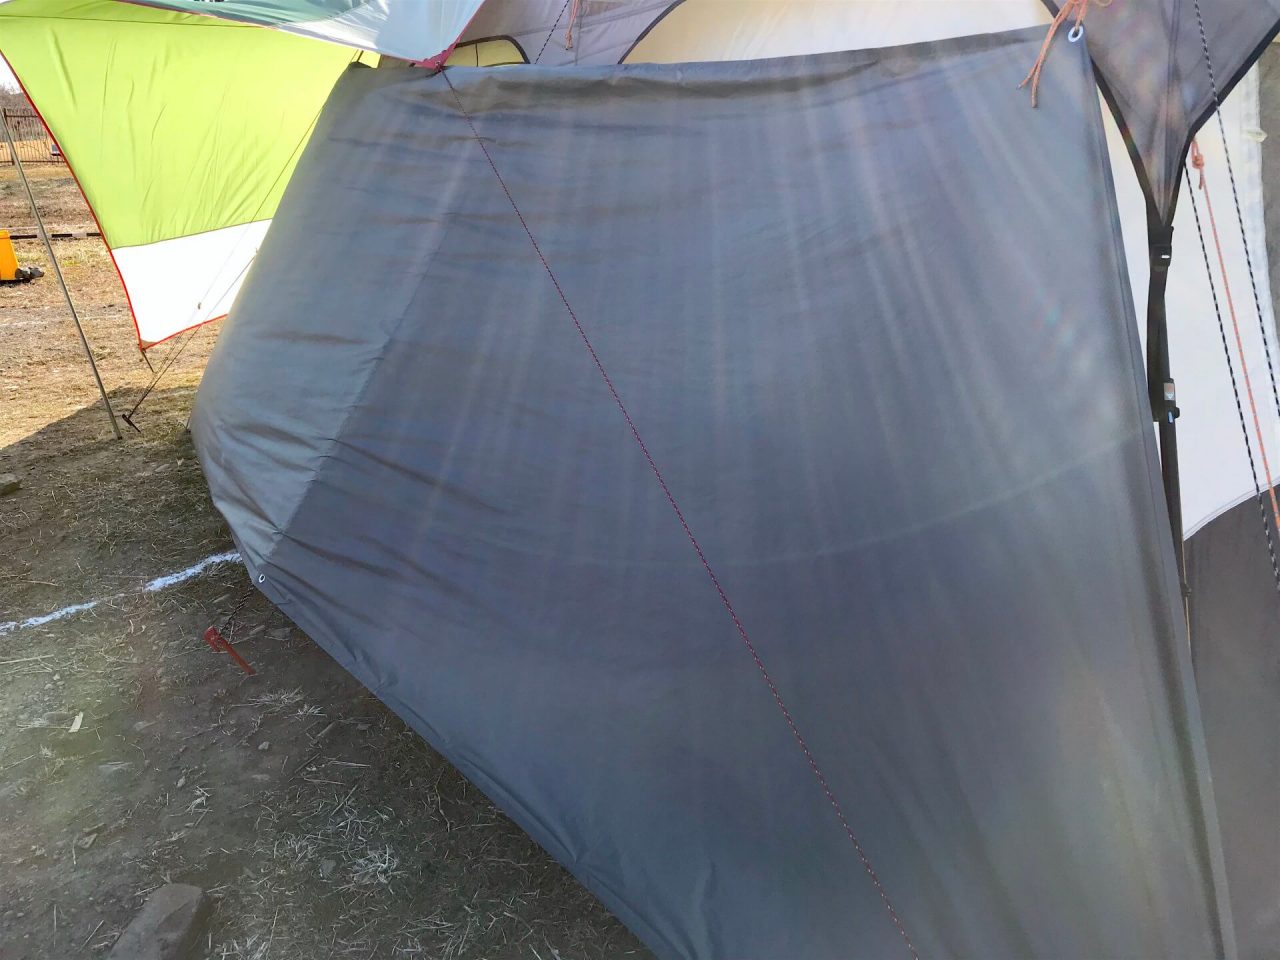 冬キャンプで悩ましい テント内の結露 対策の決定版 Itoito Style